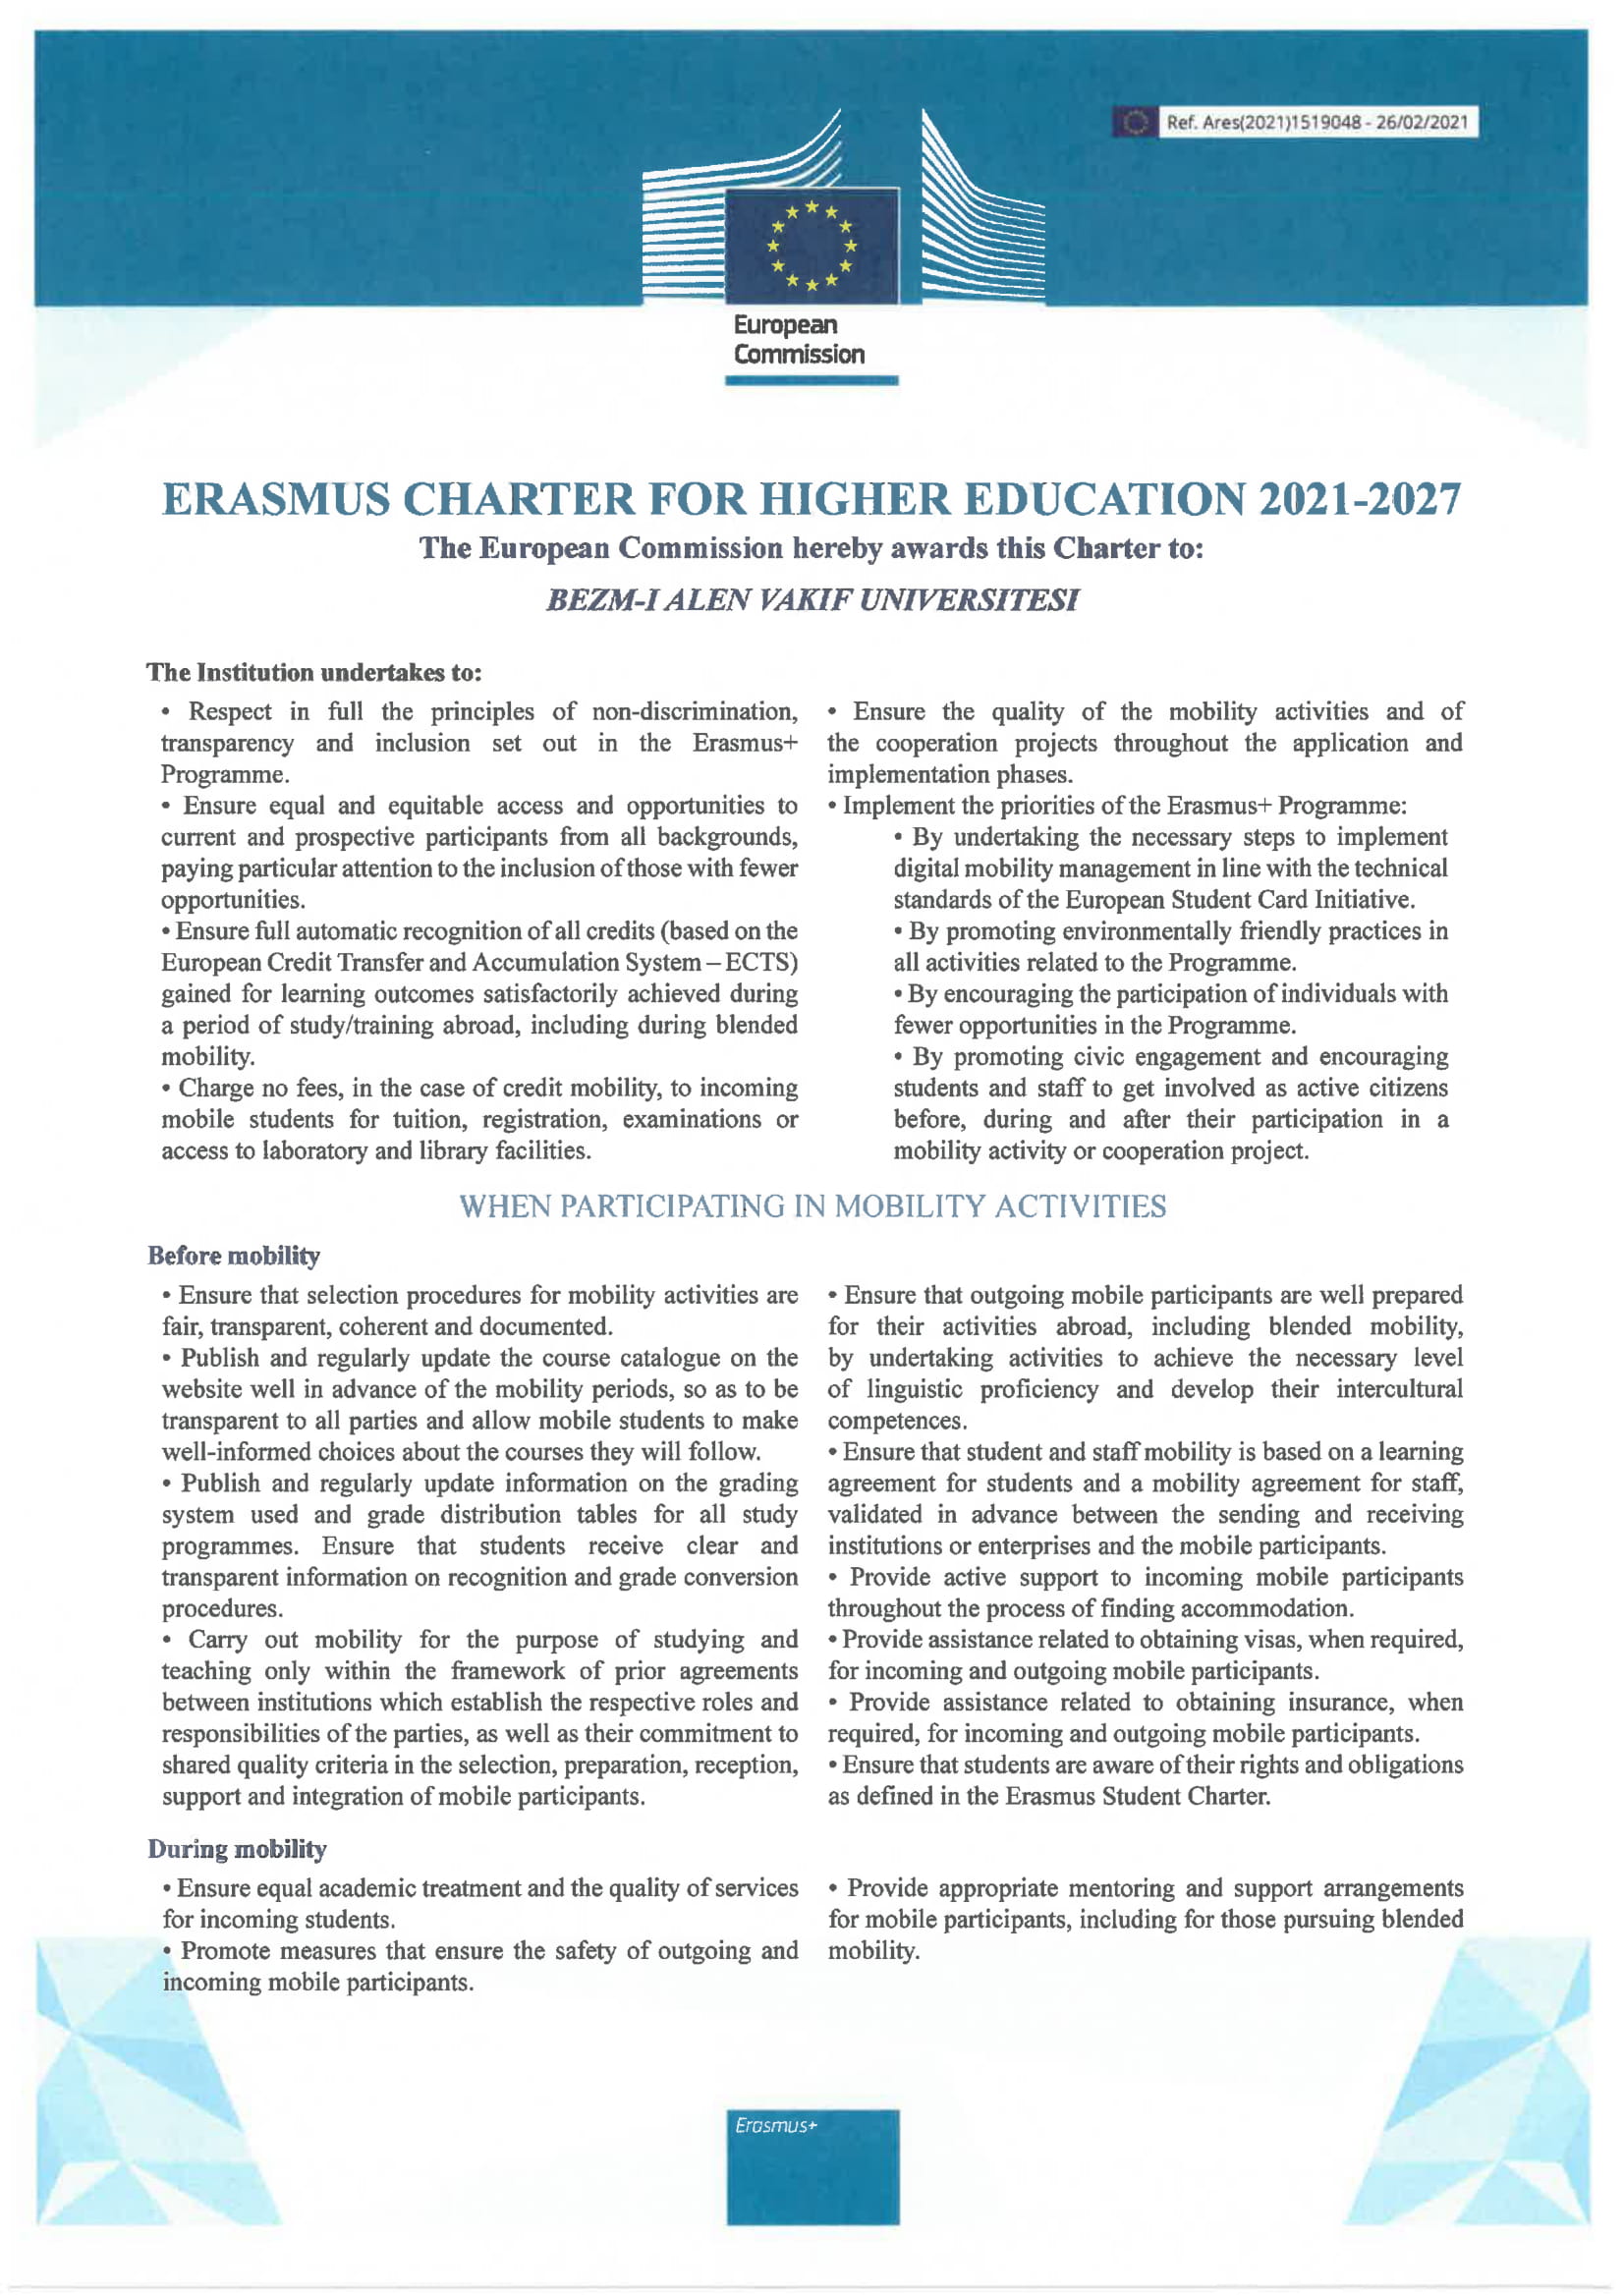 erasmus charter for 2021 - 2027-1.jpg